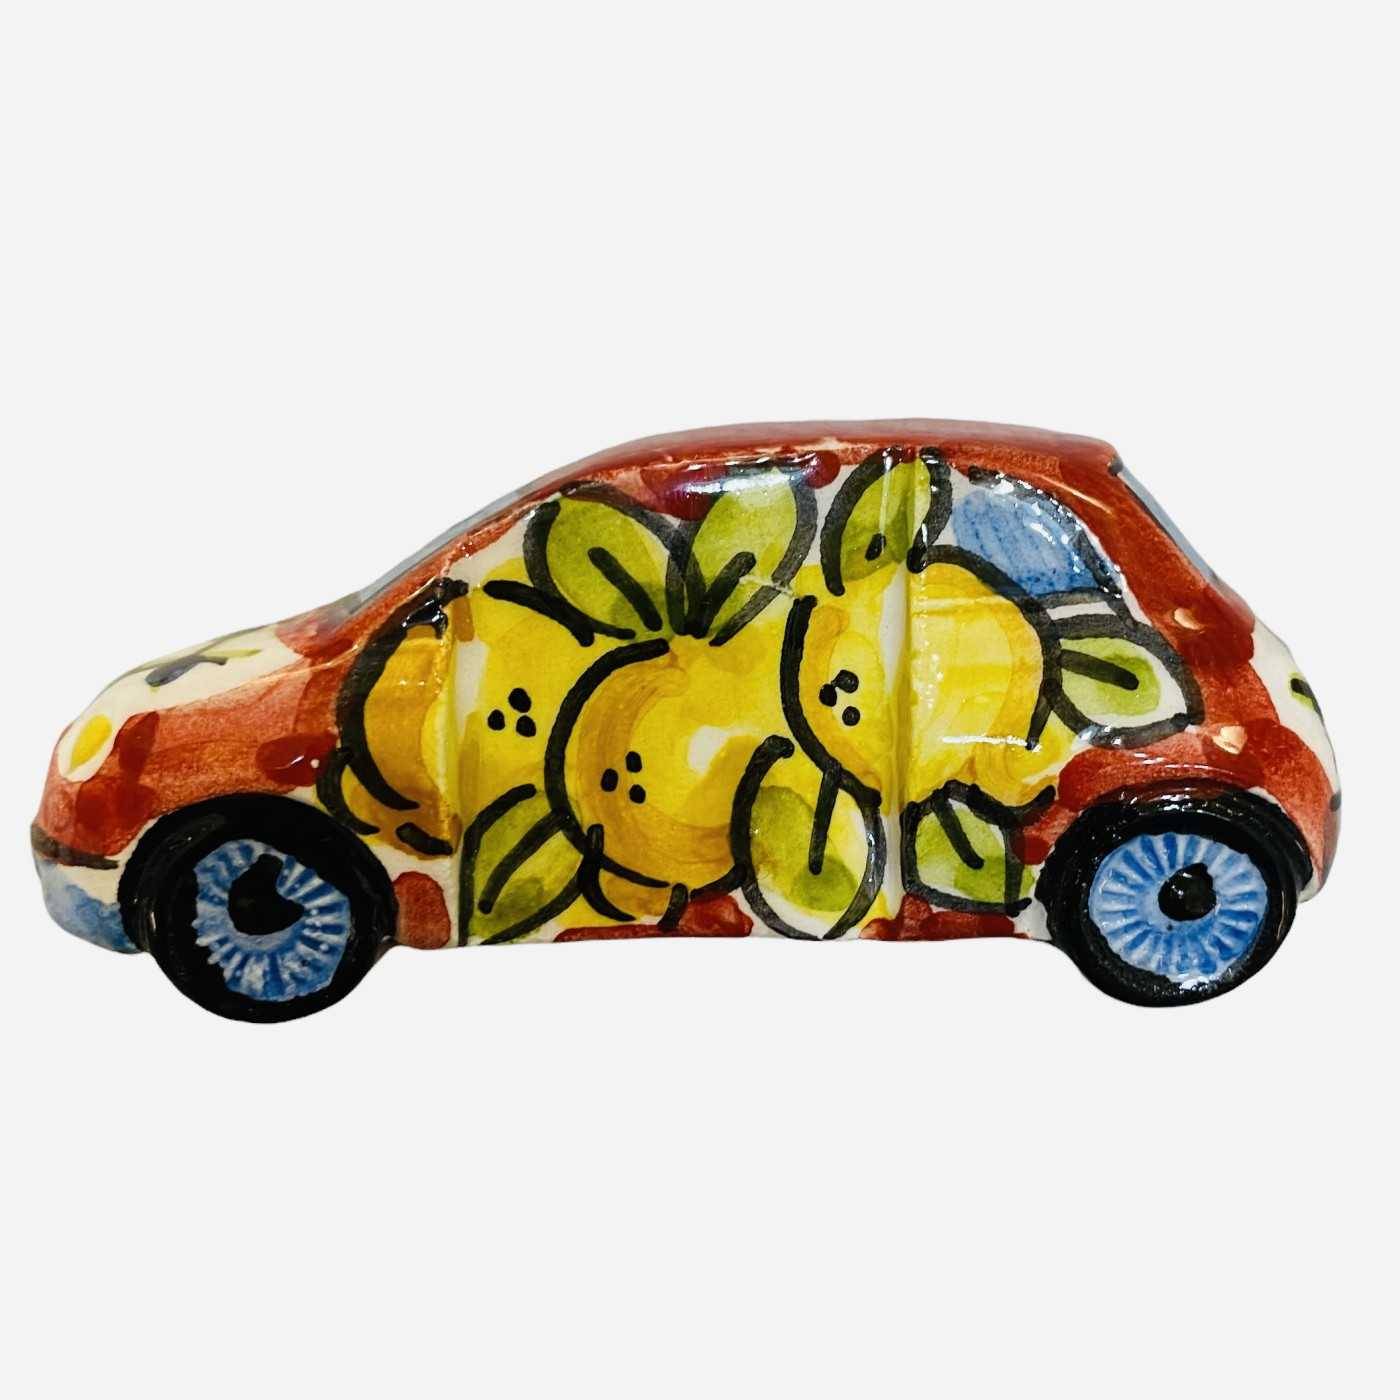 Aimant de voiture magnétique Cinquecento 500 Caltagirone en céramique  décoré à la main Décoration sicilienne - Mesure 7,5 x 3,5